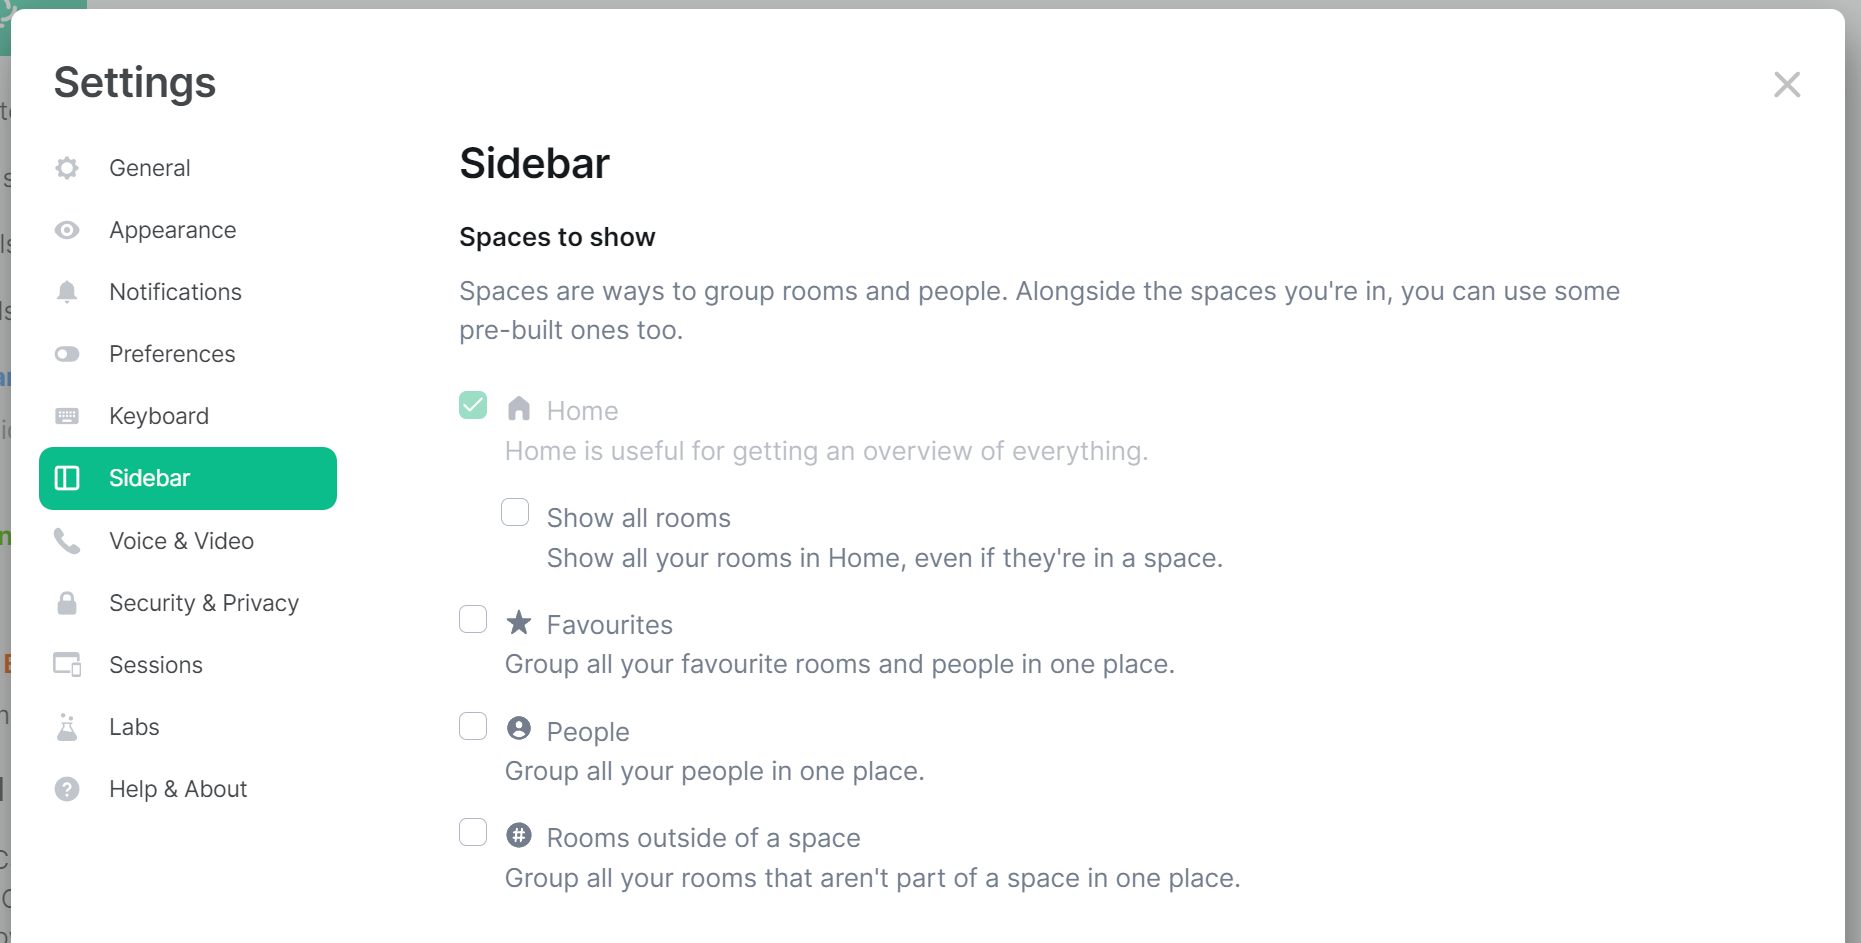 sidebar_settings